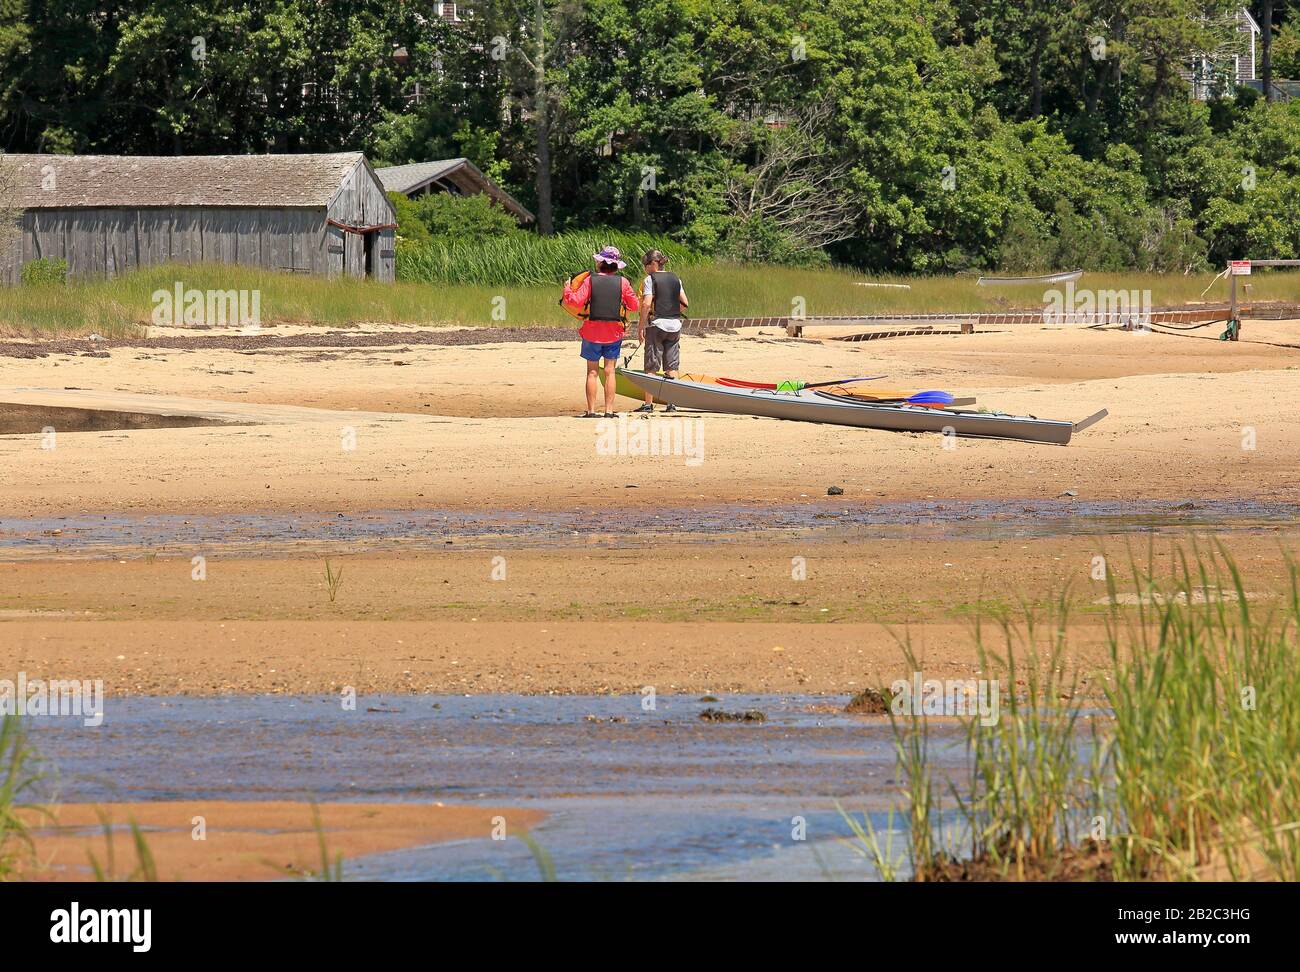 Deux rameurs avec leur canoë s'est tiré sur la plage Banque D'Images